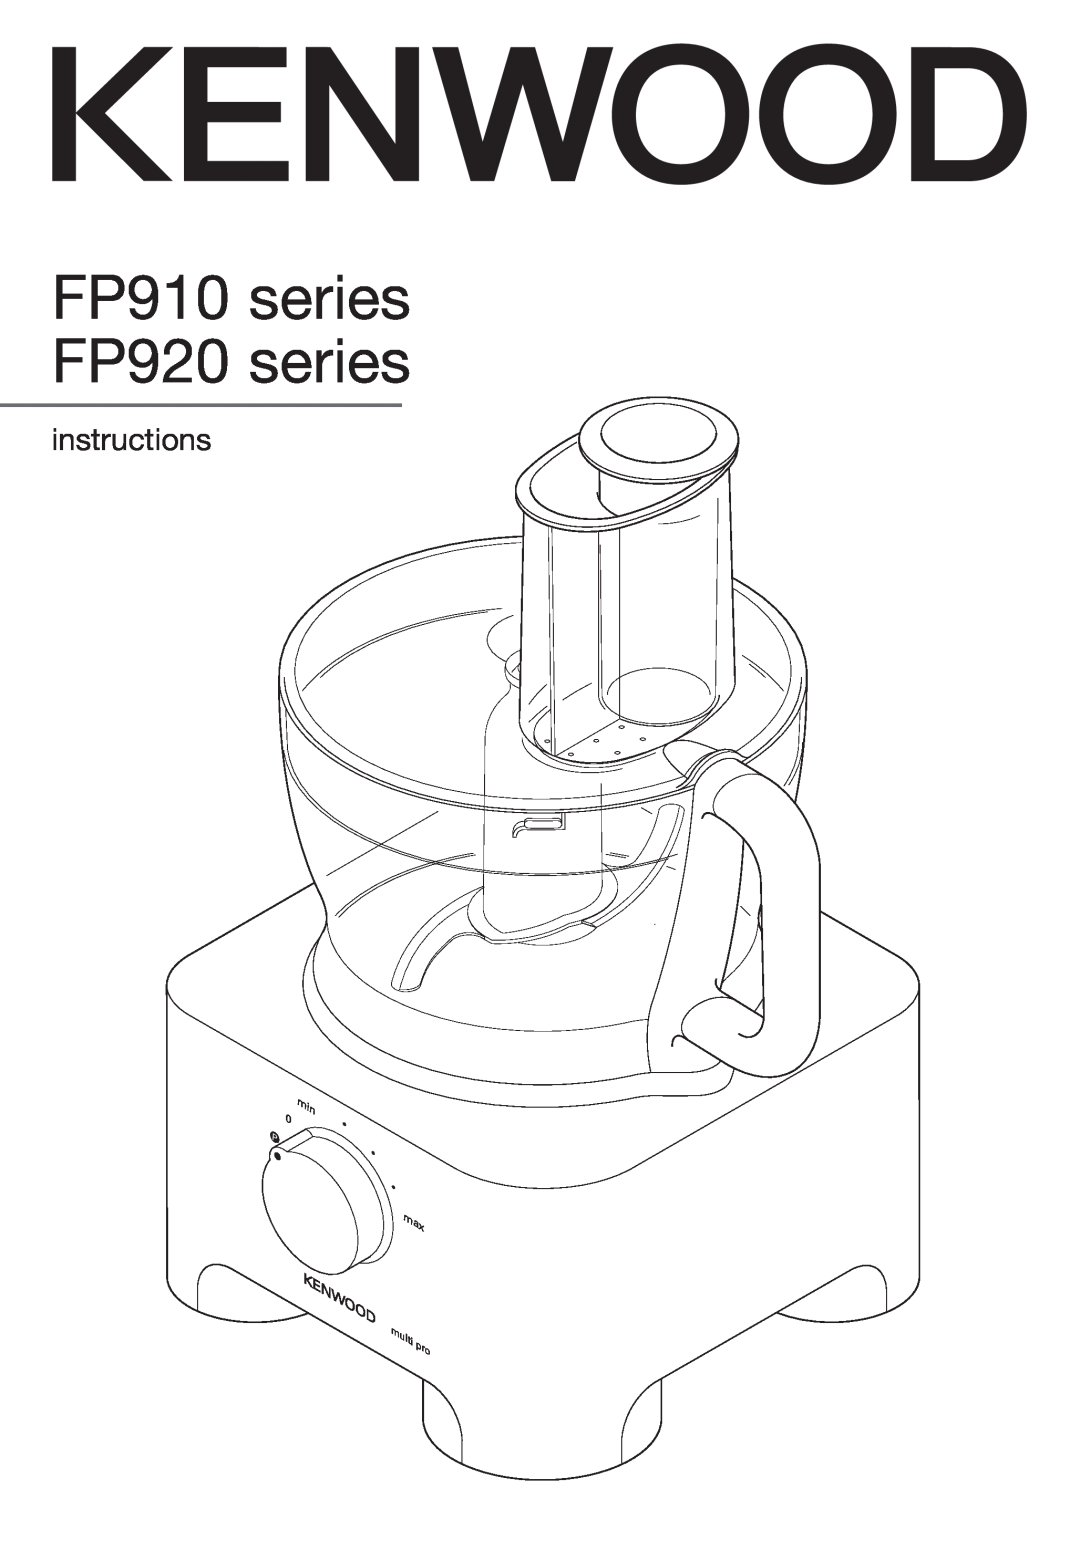 Kenwood manual instructions, FP910 series FP920 series 